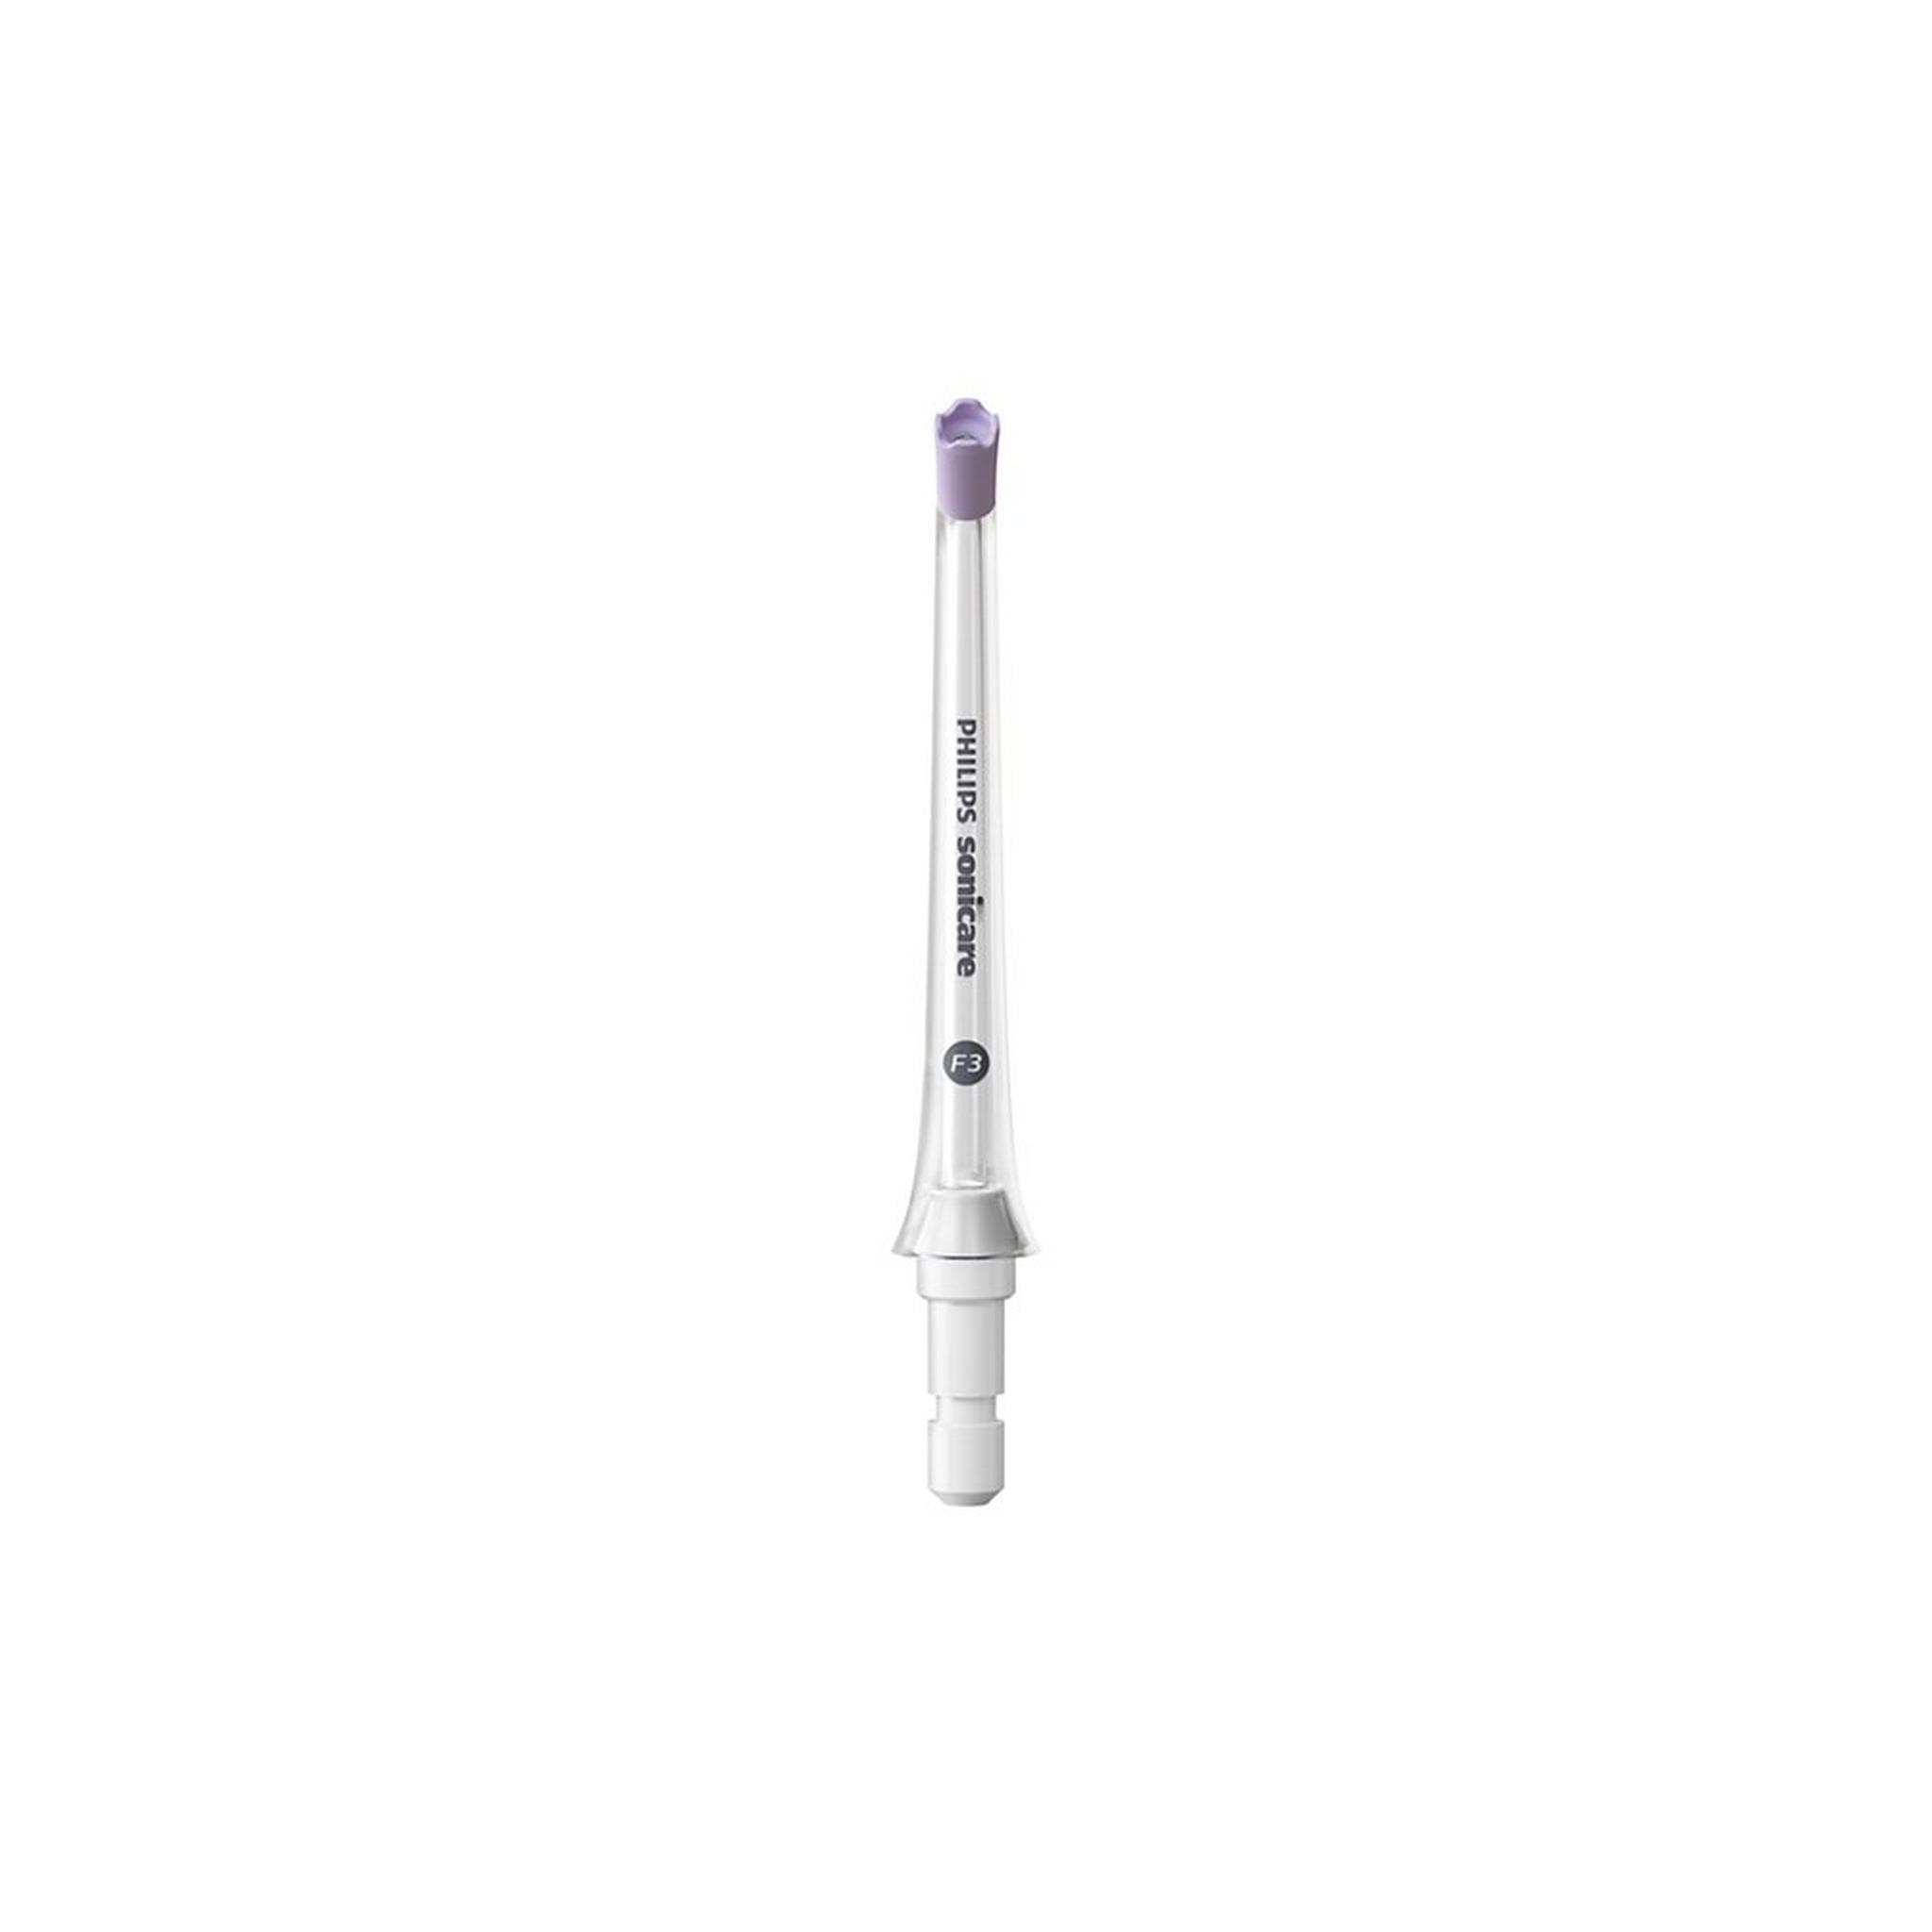 فوهة جهاز غسل الفم بتدفق رباعي من فيليبس، فوهتان، HX3062/00 - أبيض